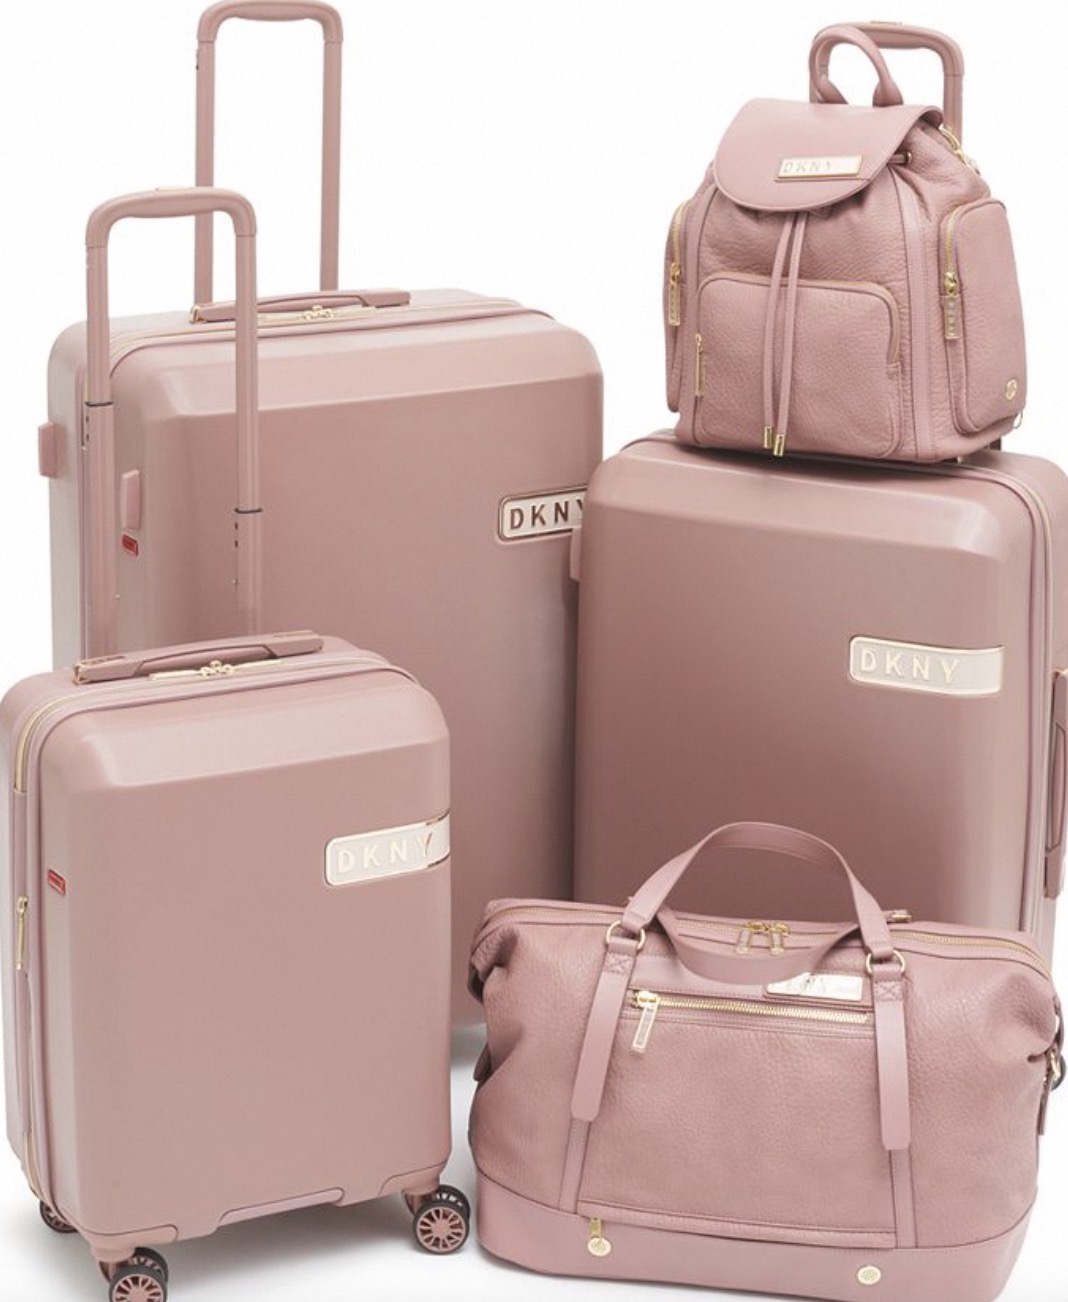 macys luggage